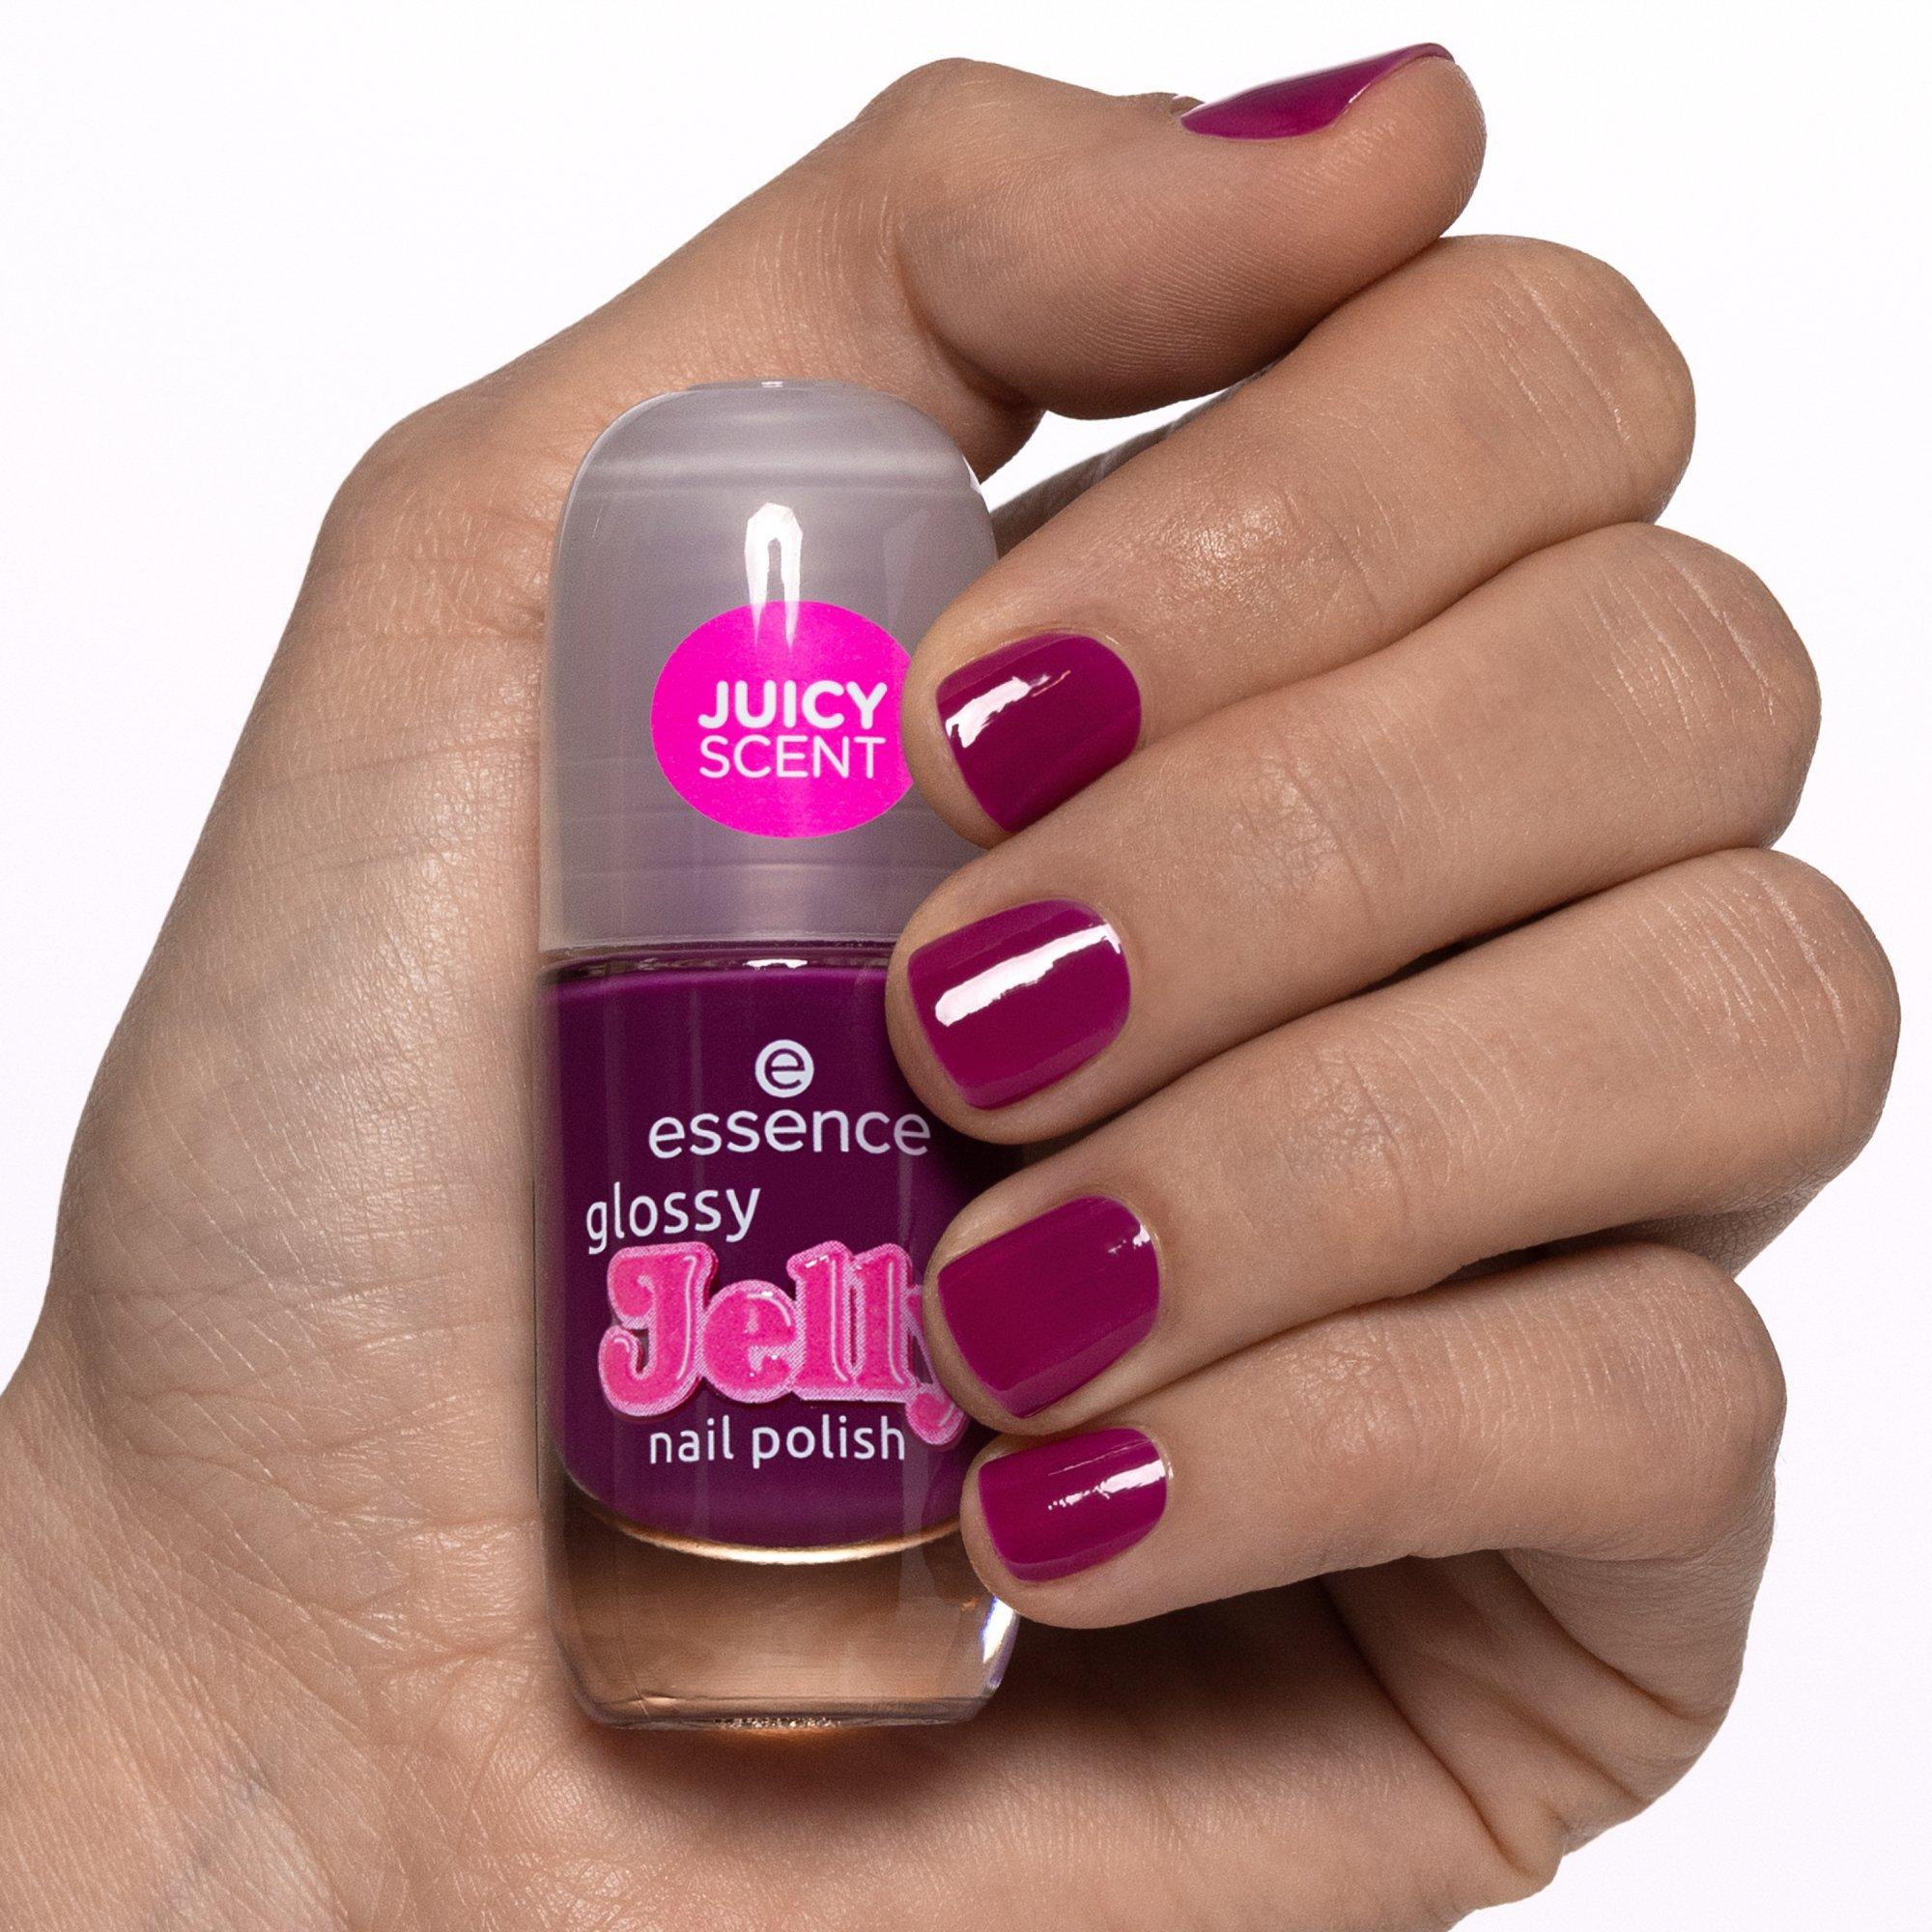 glossy Jelly nail polish